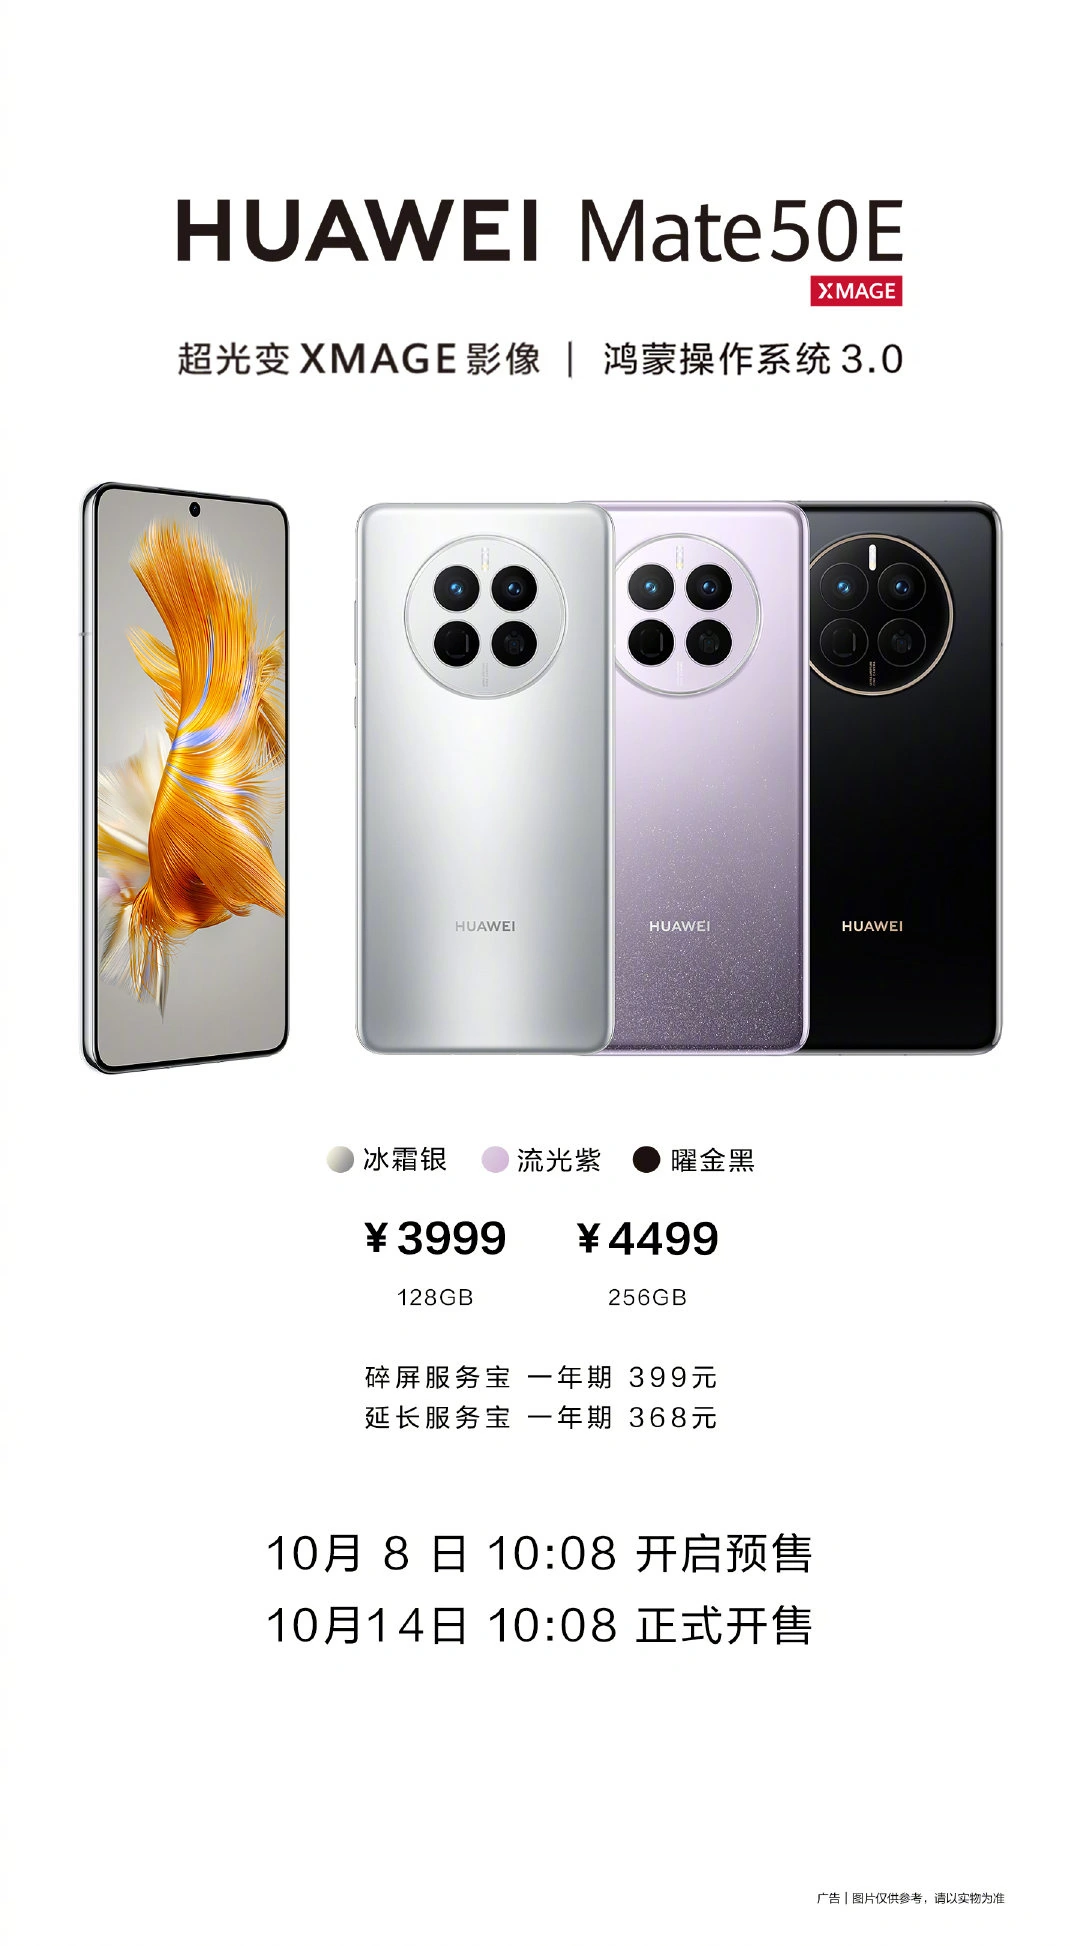 Huawei Mate 50E a la venta en China